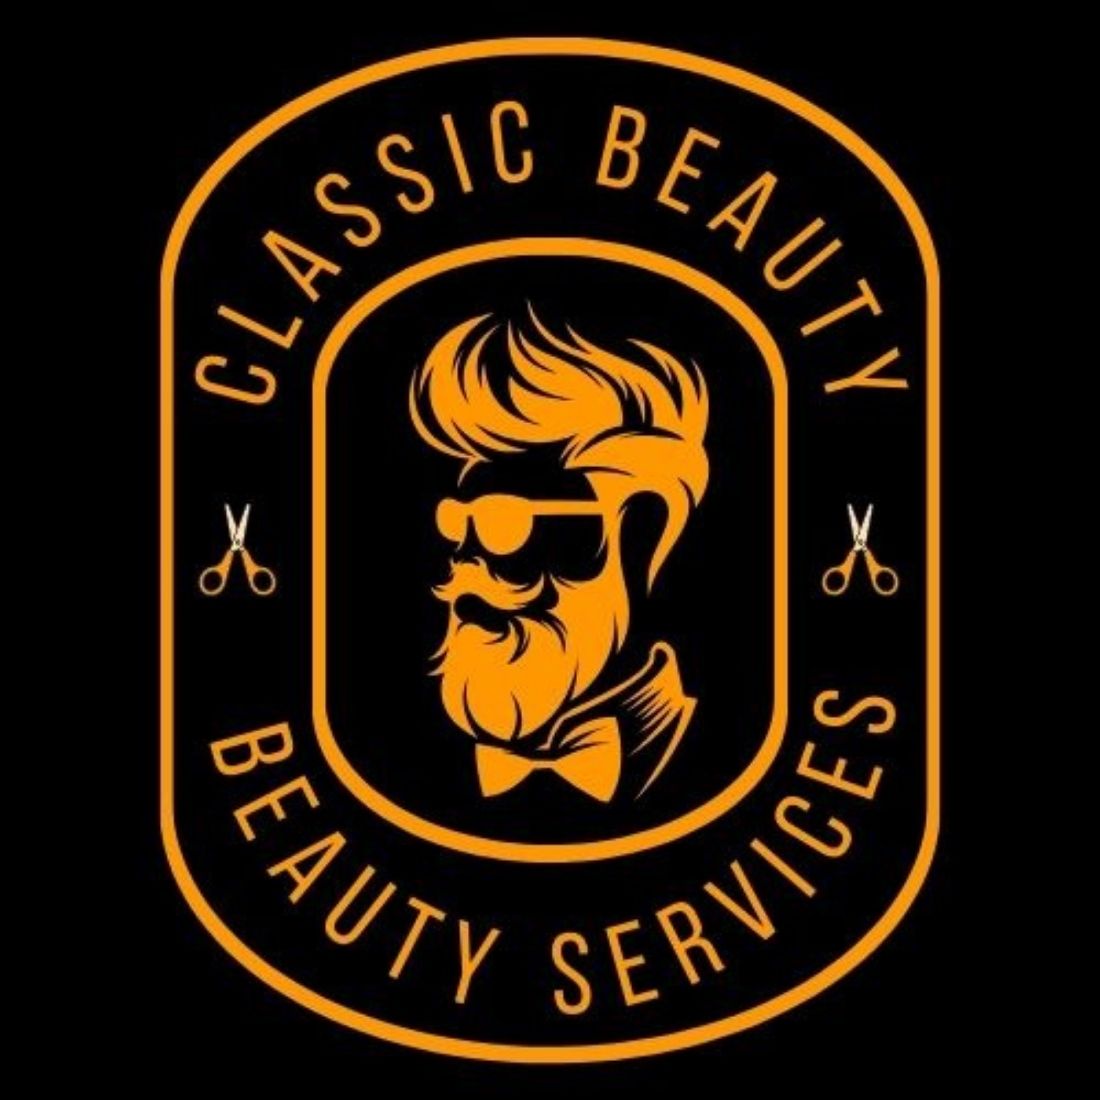 Unique Barber & Beauty Shop Logo Template cover image.